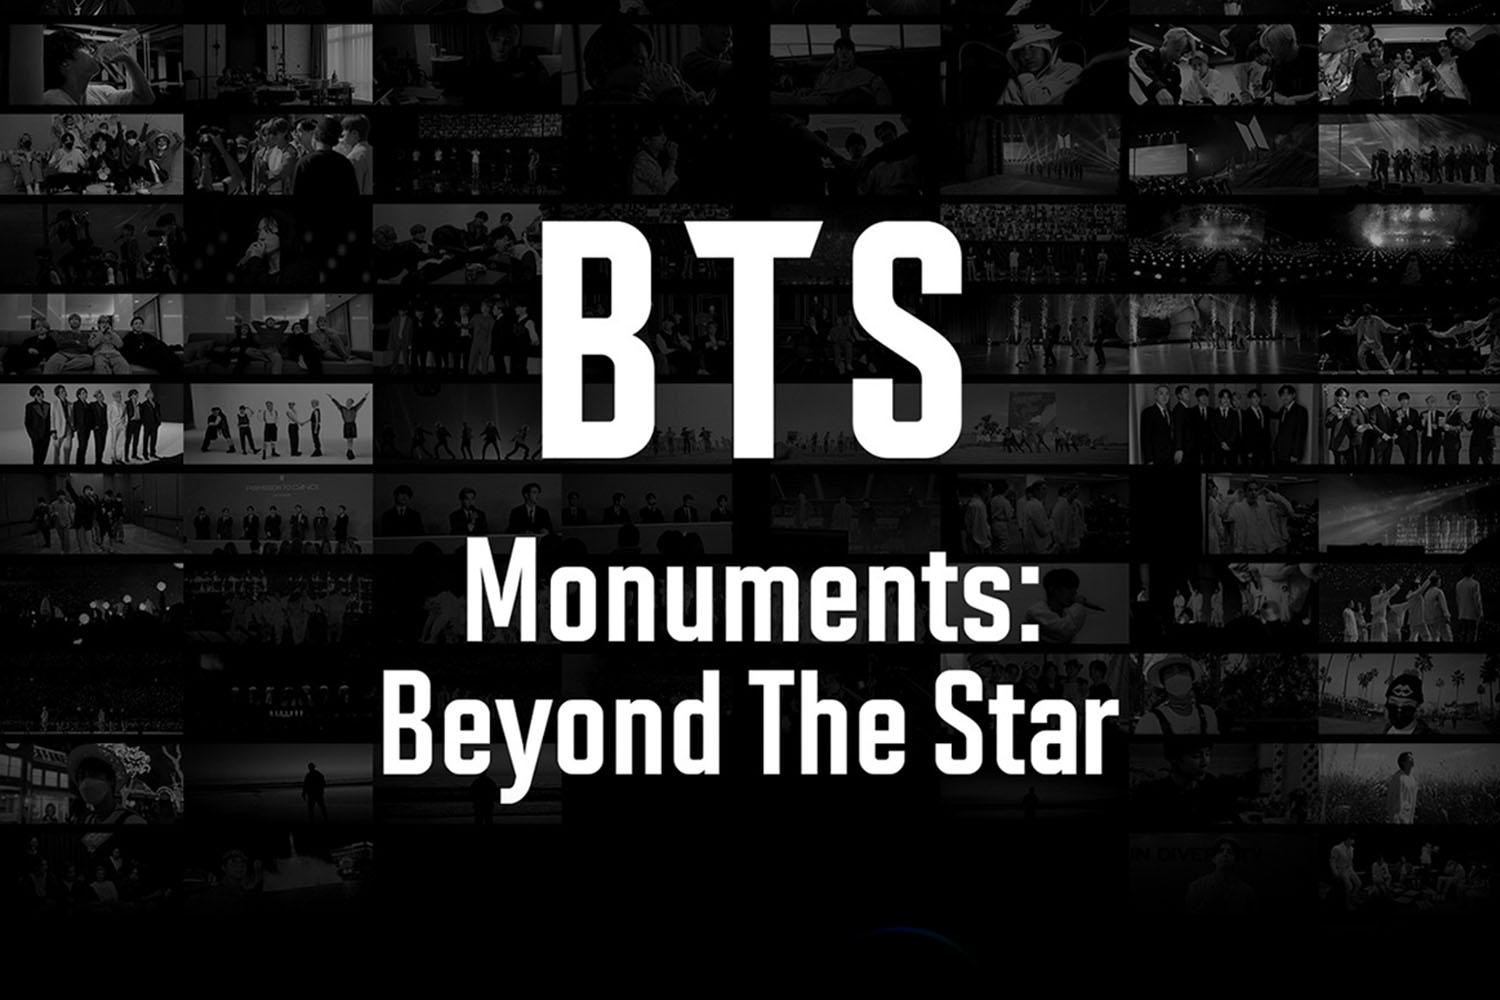 BTS-MONUMENTS-BEYOND-THE-STAR-Disney-plus-Hotstar-SPACEBAR-Hero.jpg